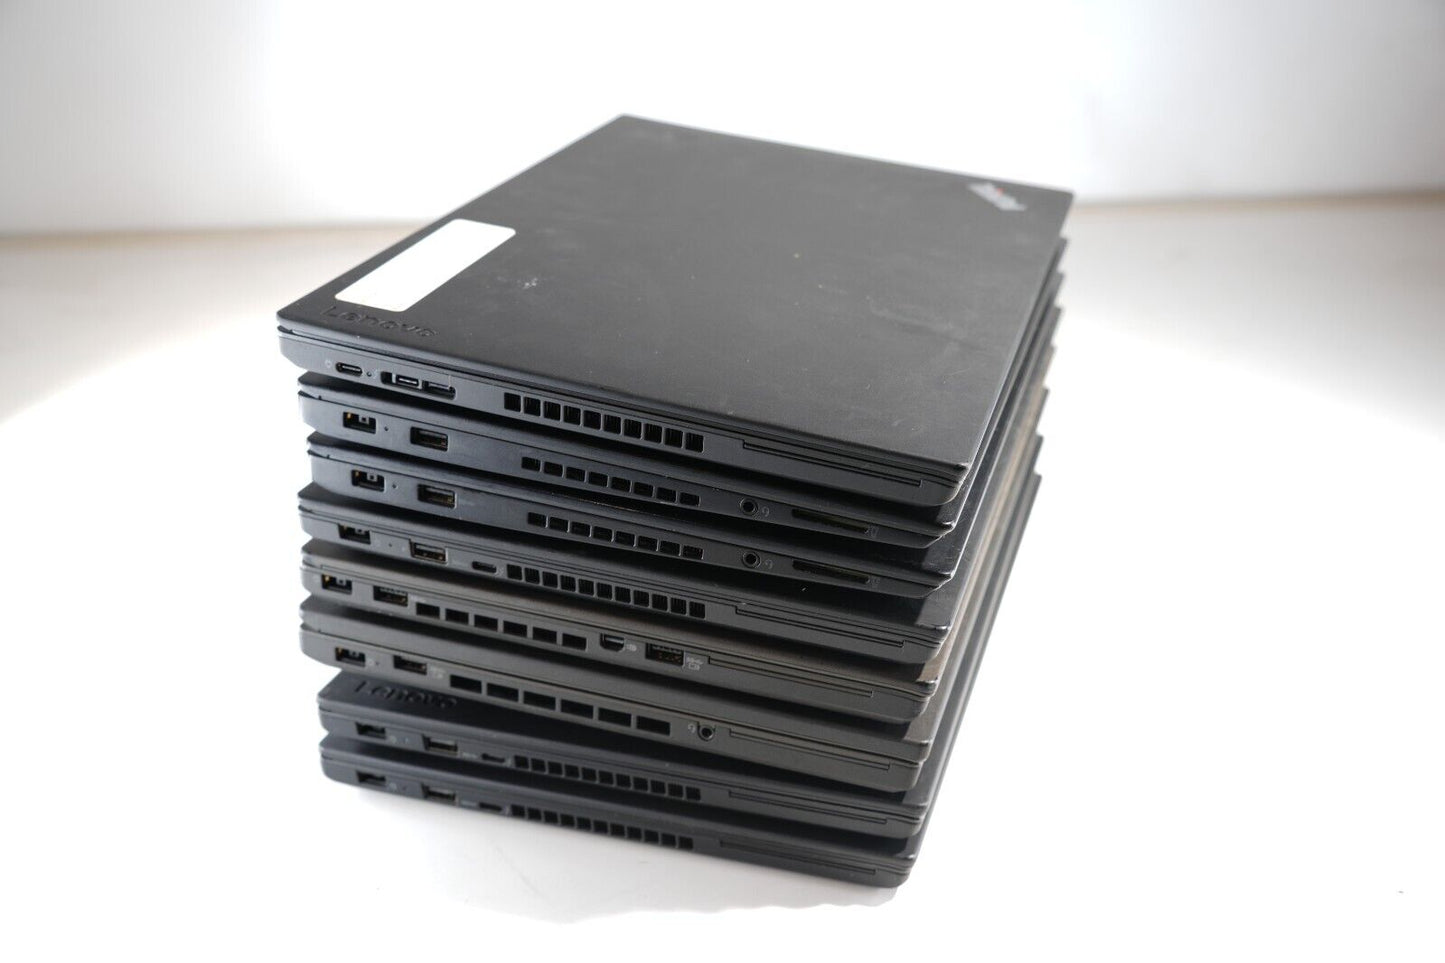 Lot of 8 Lenovo ThinkPad T460, T460s, T460p T470, T480 6th Gen 20GB Ram See Desc